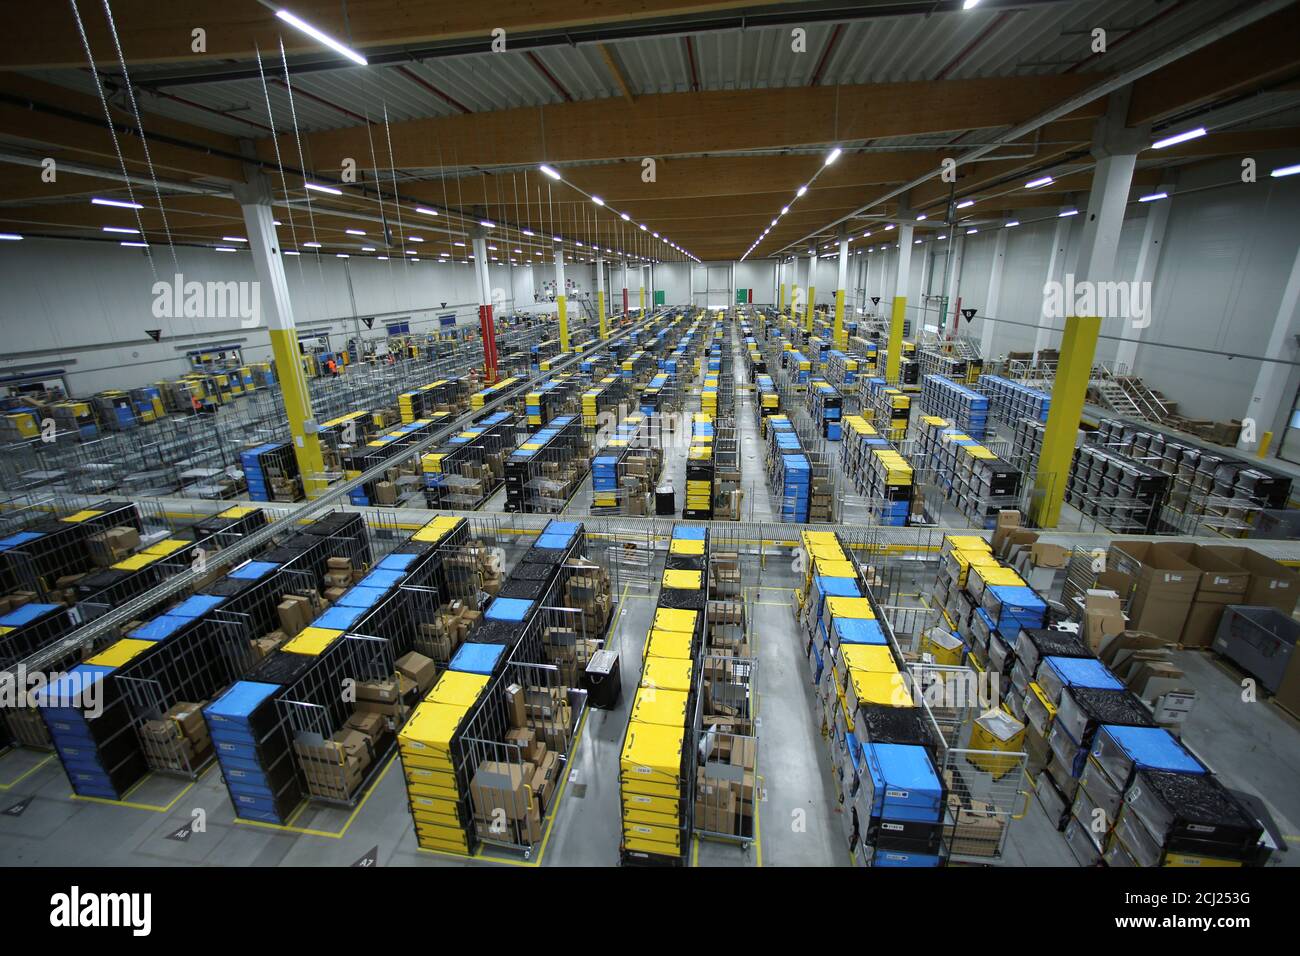 Eine Innenansicht eines Amazon Logistikzentrums in Mannheim, 17. September  2019. REUTERS/Ralph Orlowski Stockfotografie - Alamy